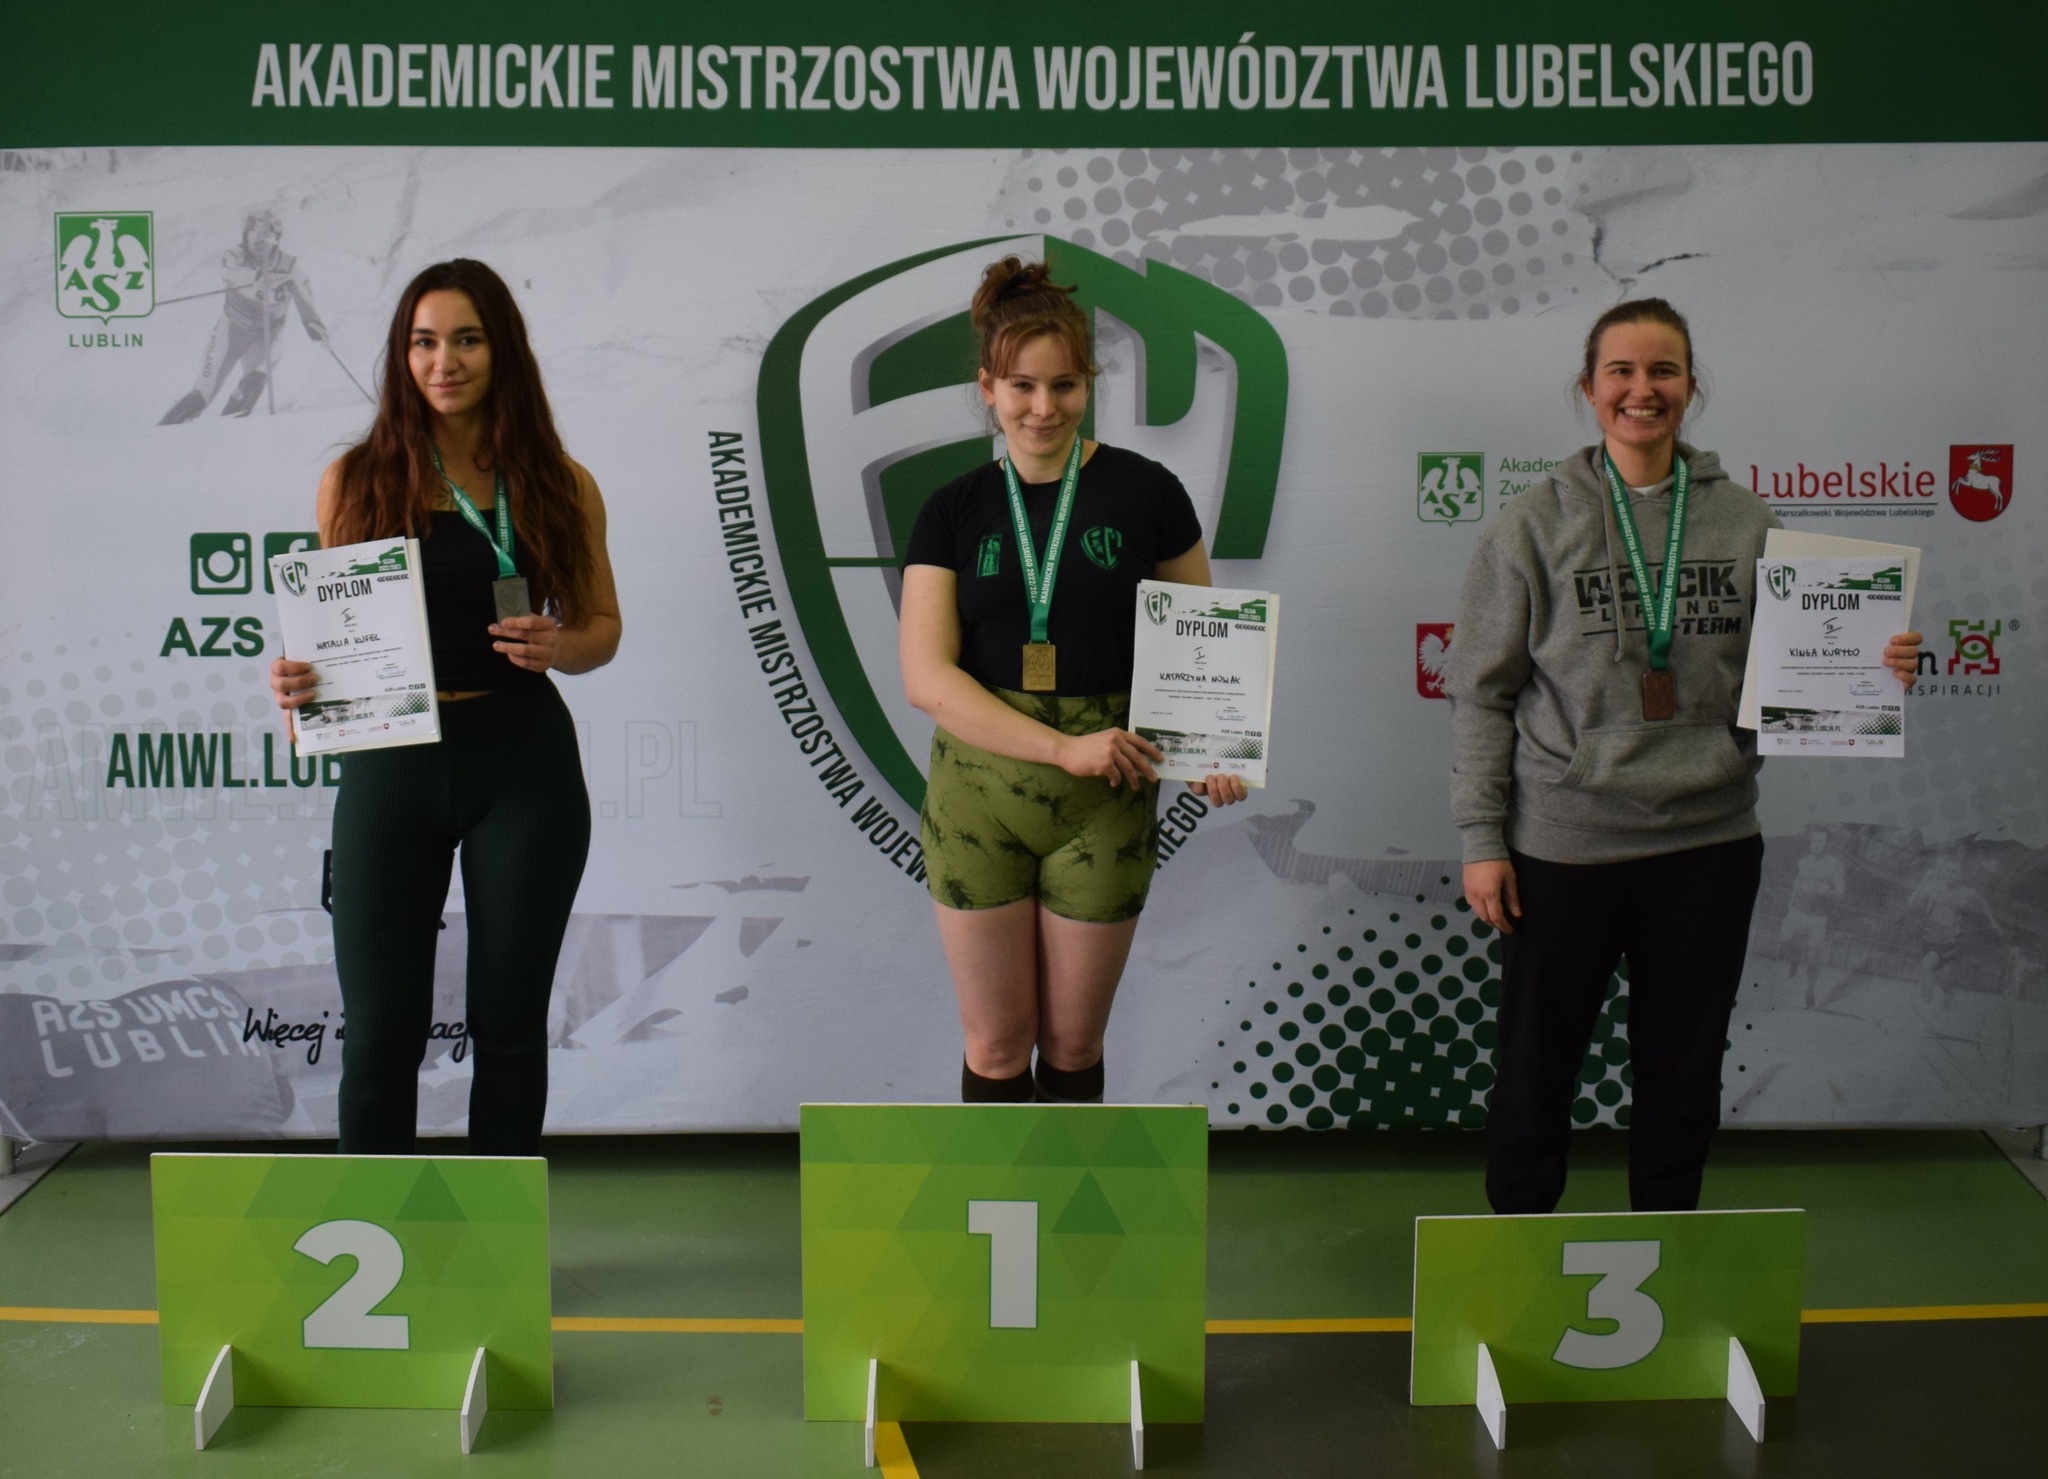 12 medali dla AZS UP Lublin w dwuboju siłowym!